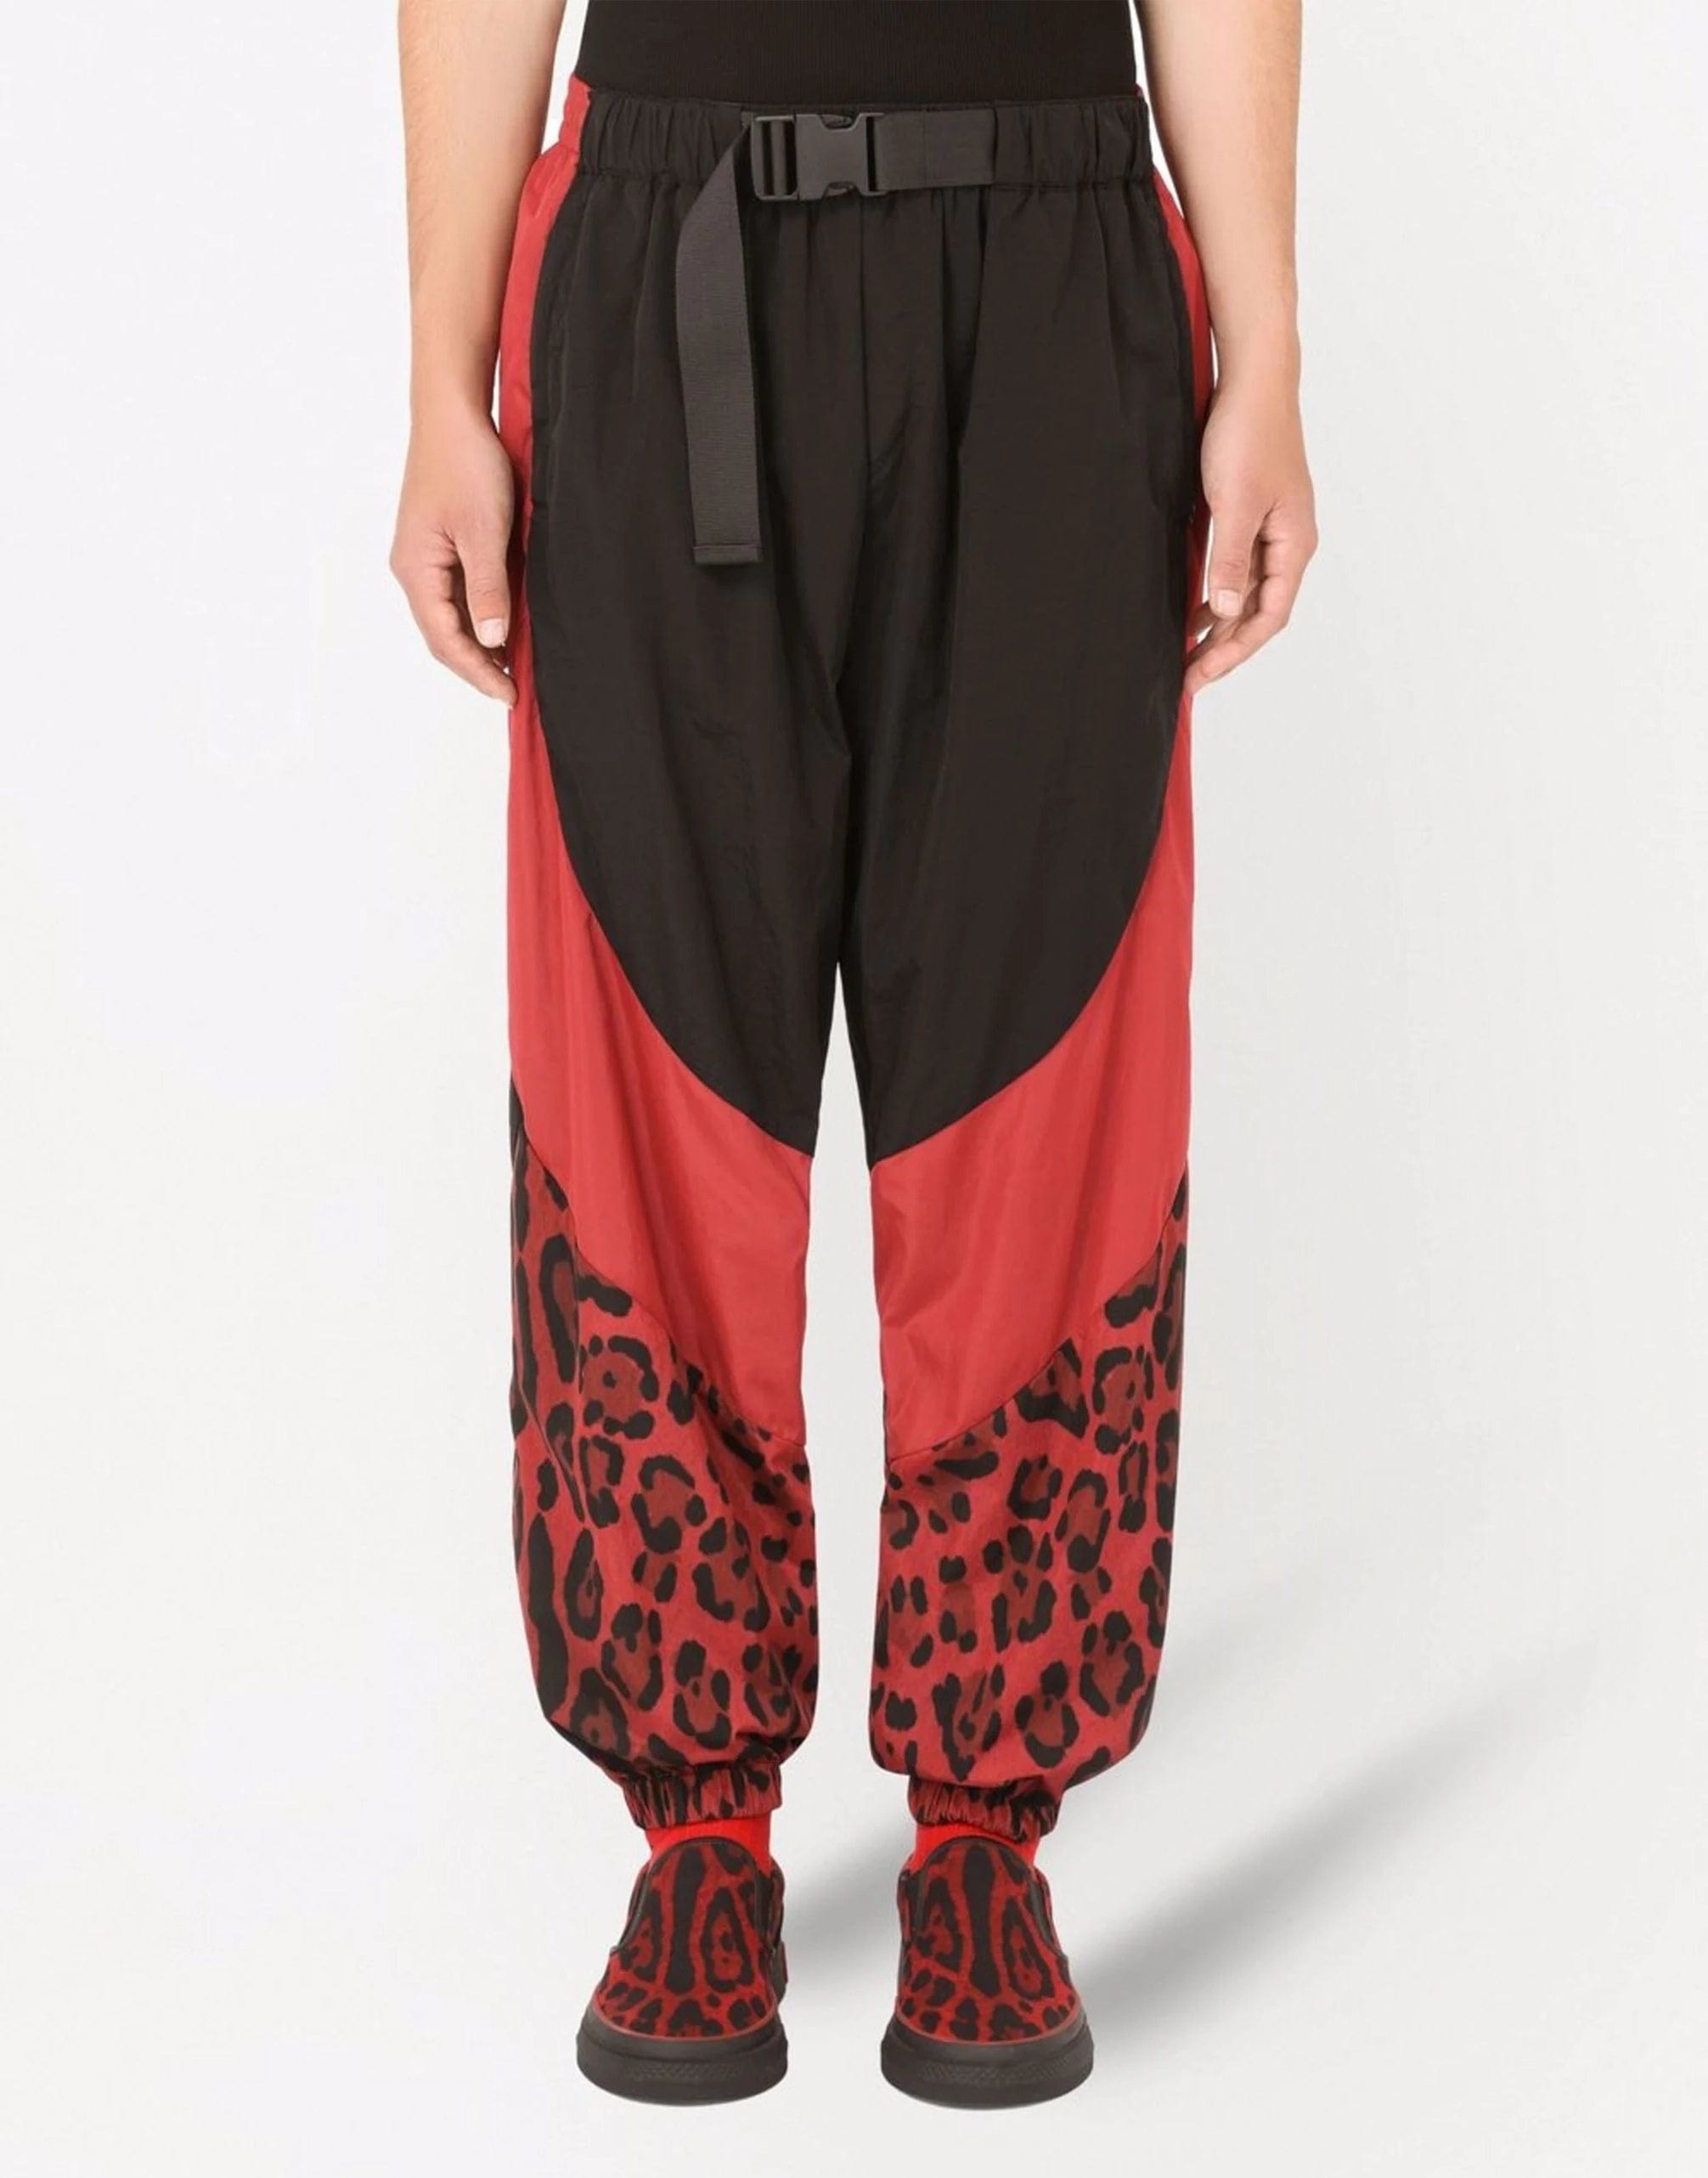 Panelled Leopard-Print Pants